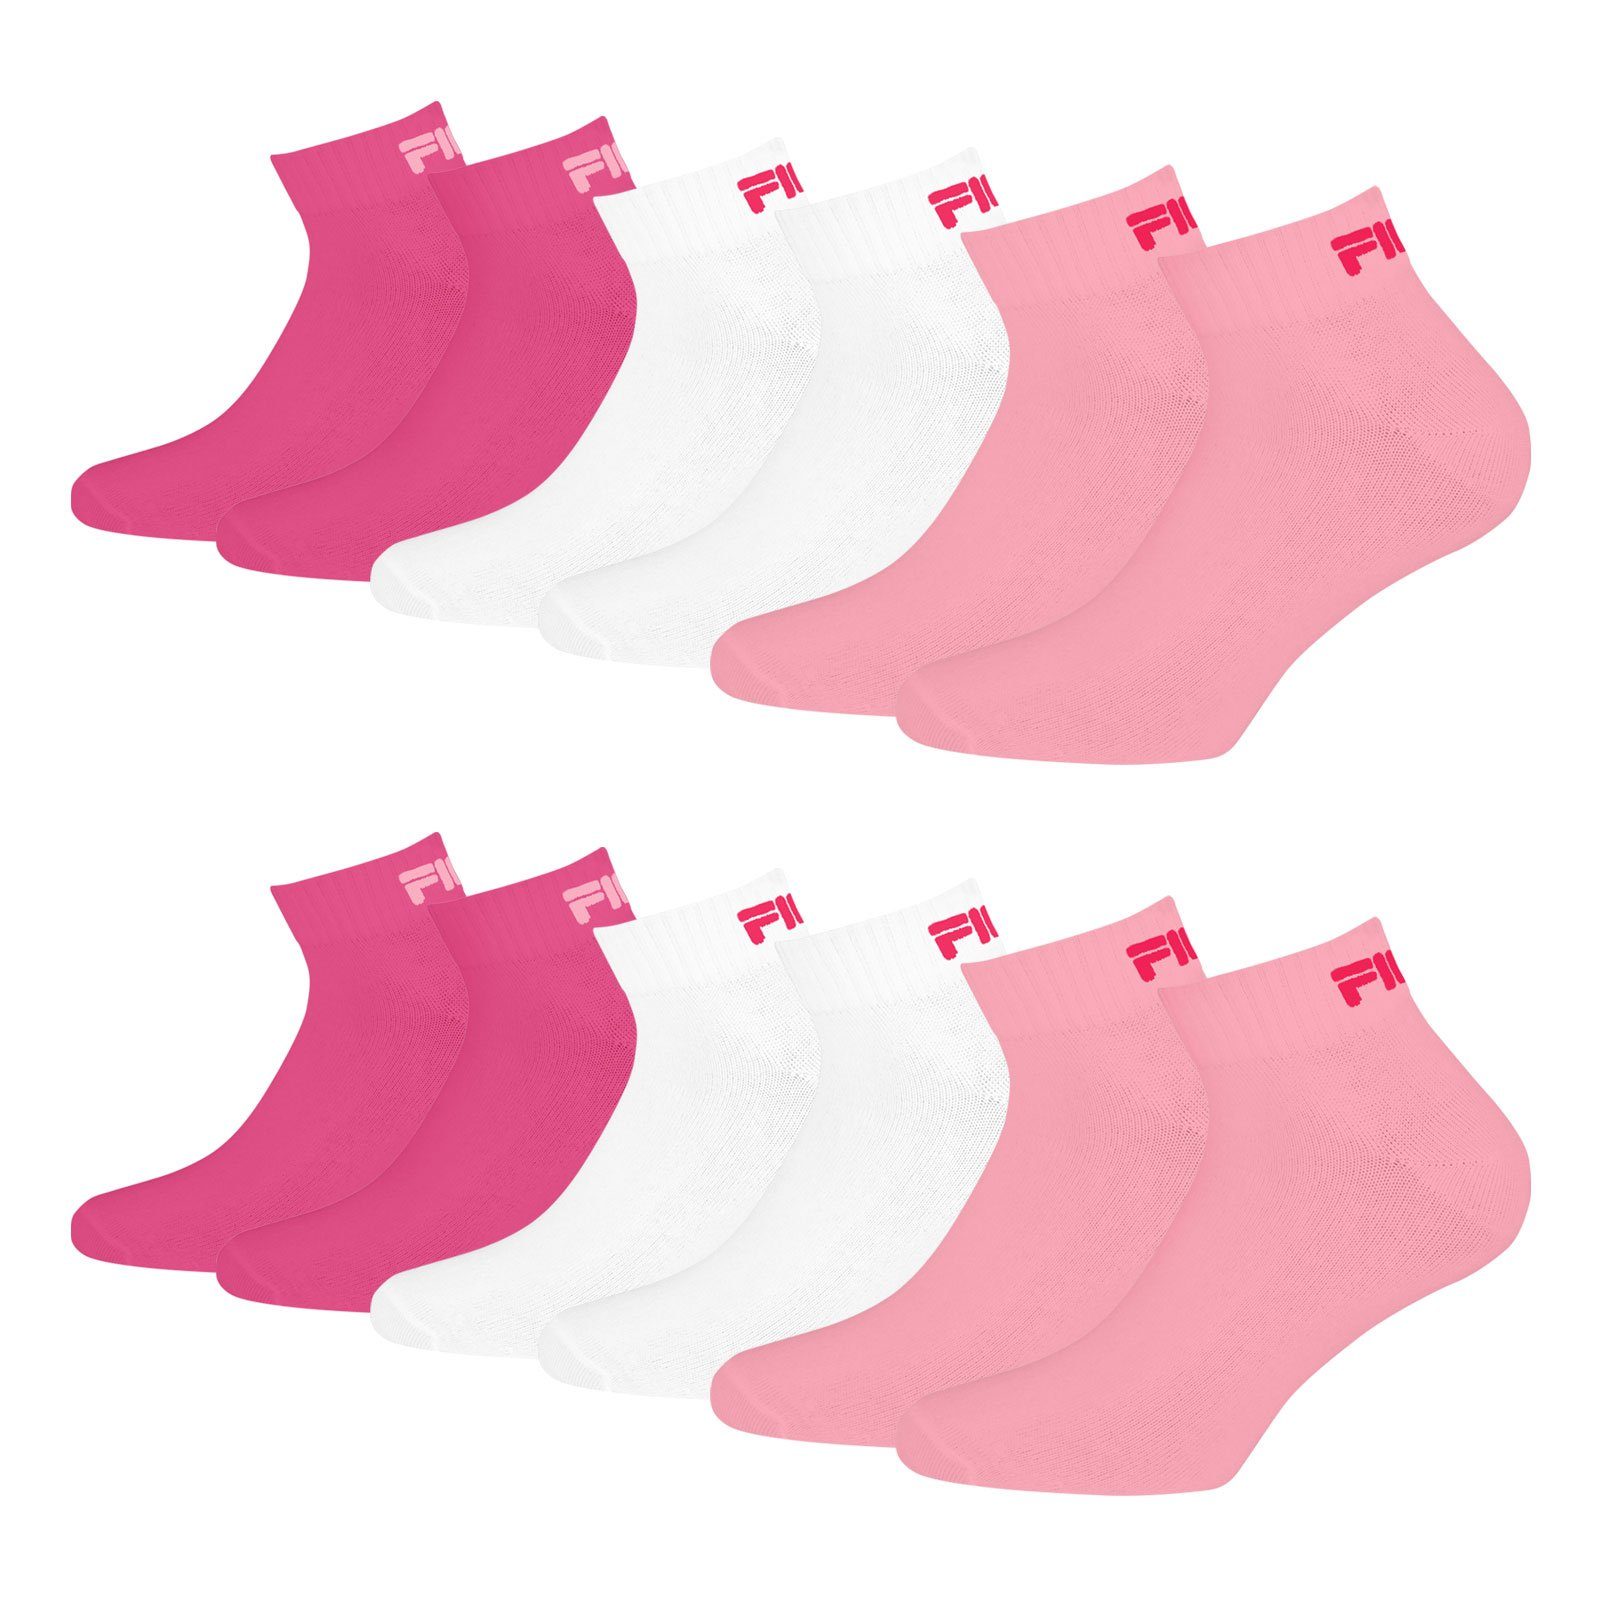 Fila Sportsocken panter mit Quarter (6-Paar) Socken Rippbündchen pink weichem 806